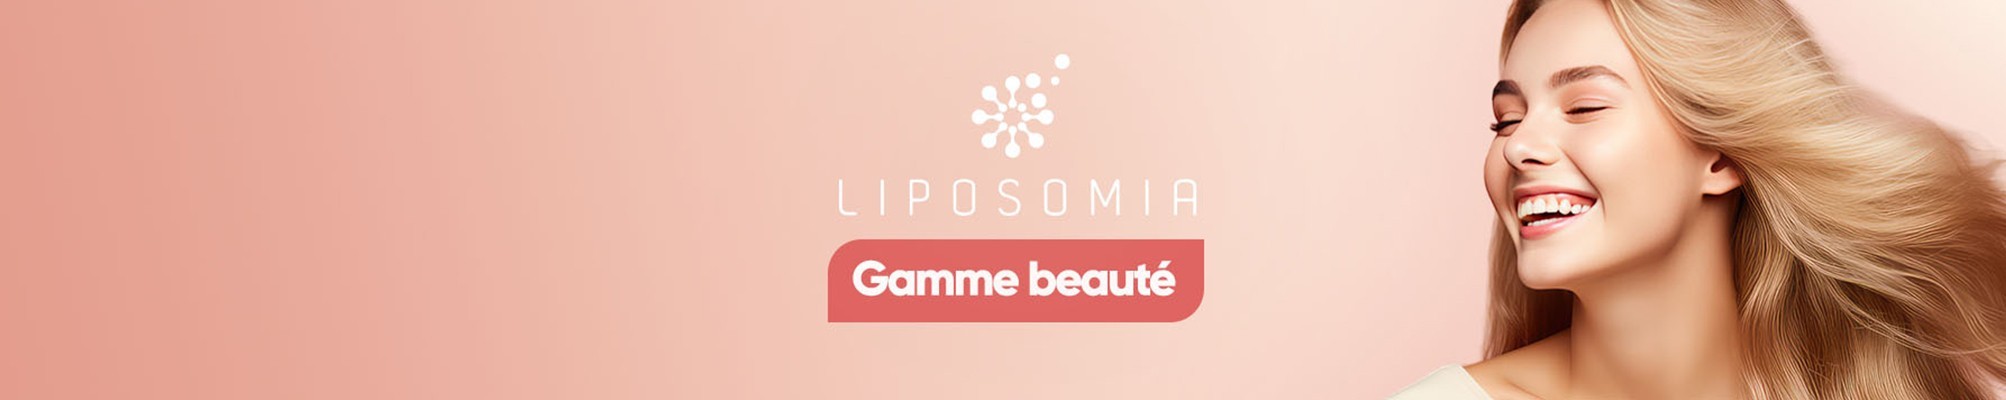 Catégorie : Liposomia Beauté